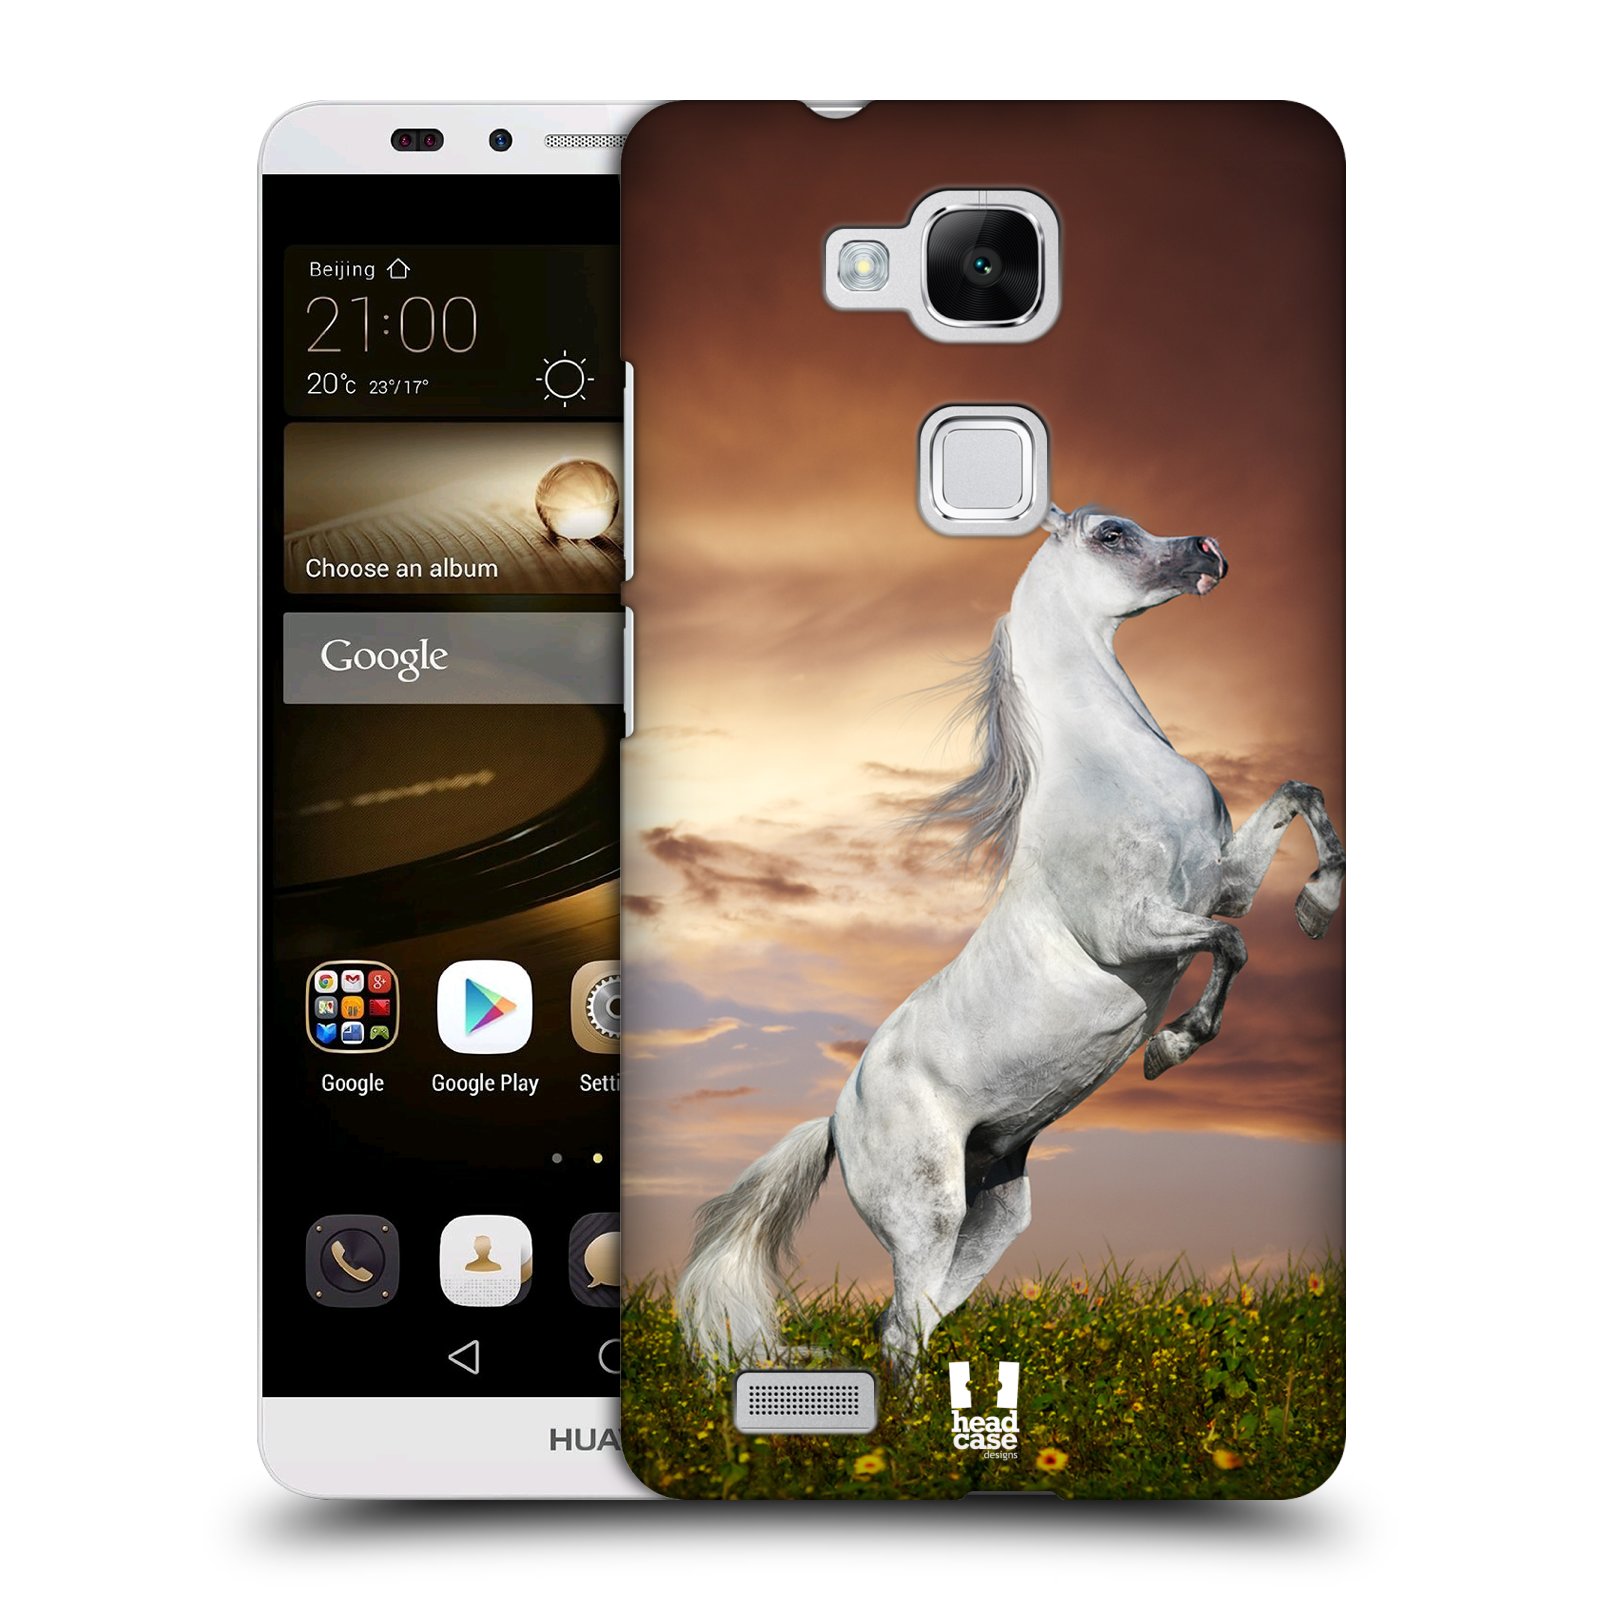 HEAD CASE plastový obal na mobil Huawei Mate 7 vzor Divočina, Divoký život a zvířata foto DIVOKÝ KŮŇ MUSTANG BÍLÁ